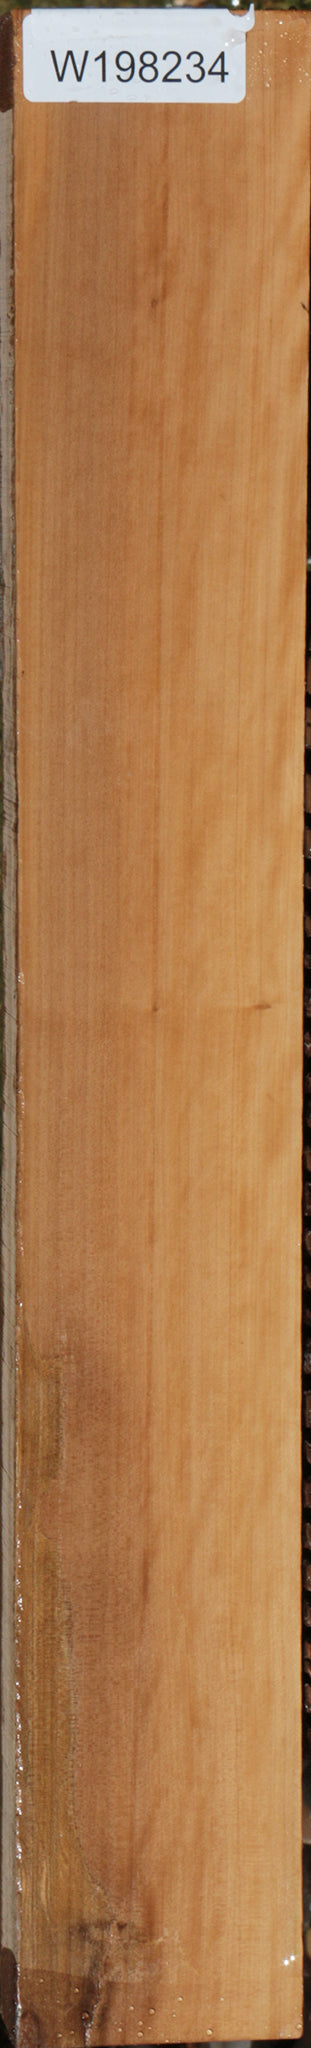 Fiddleback Castello Boxwood Lumber